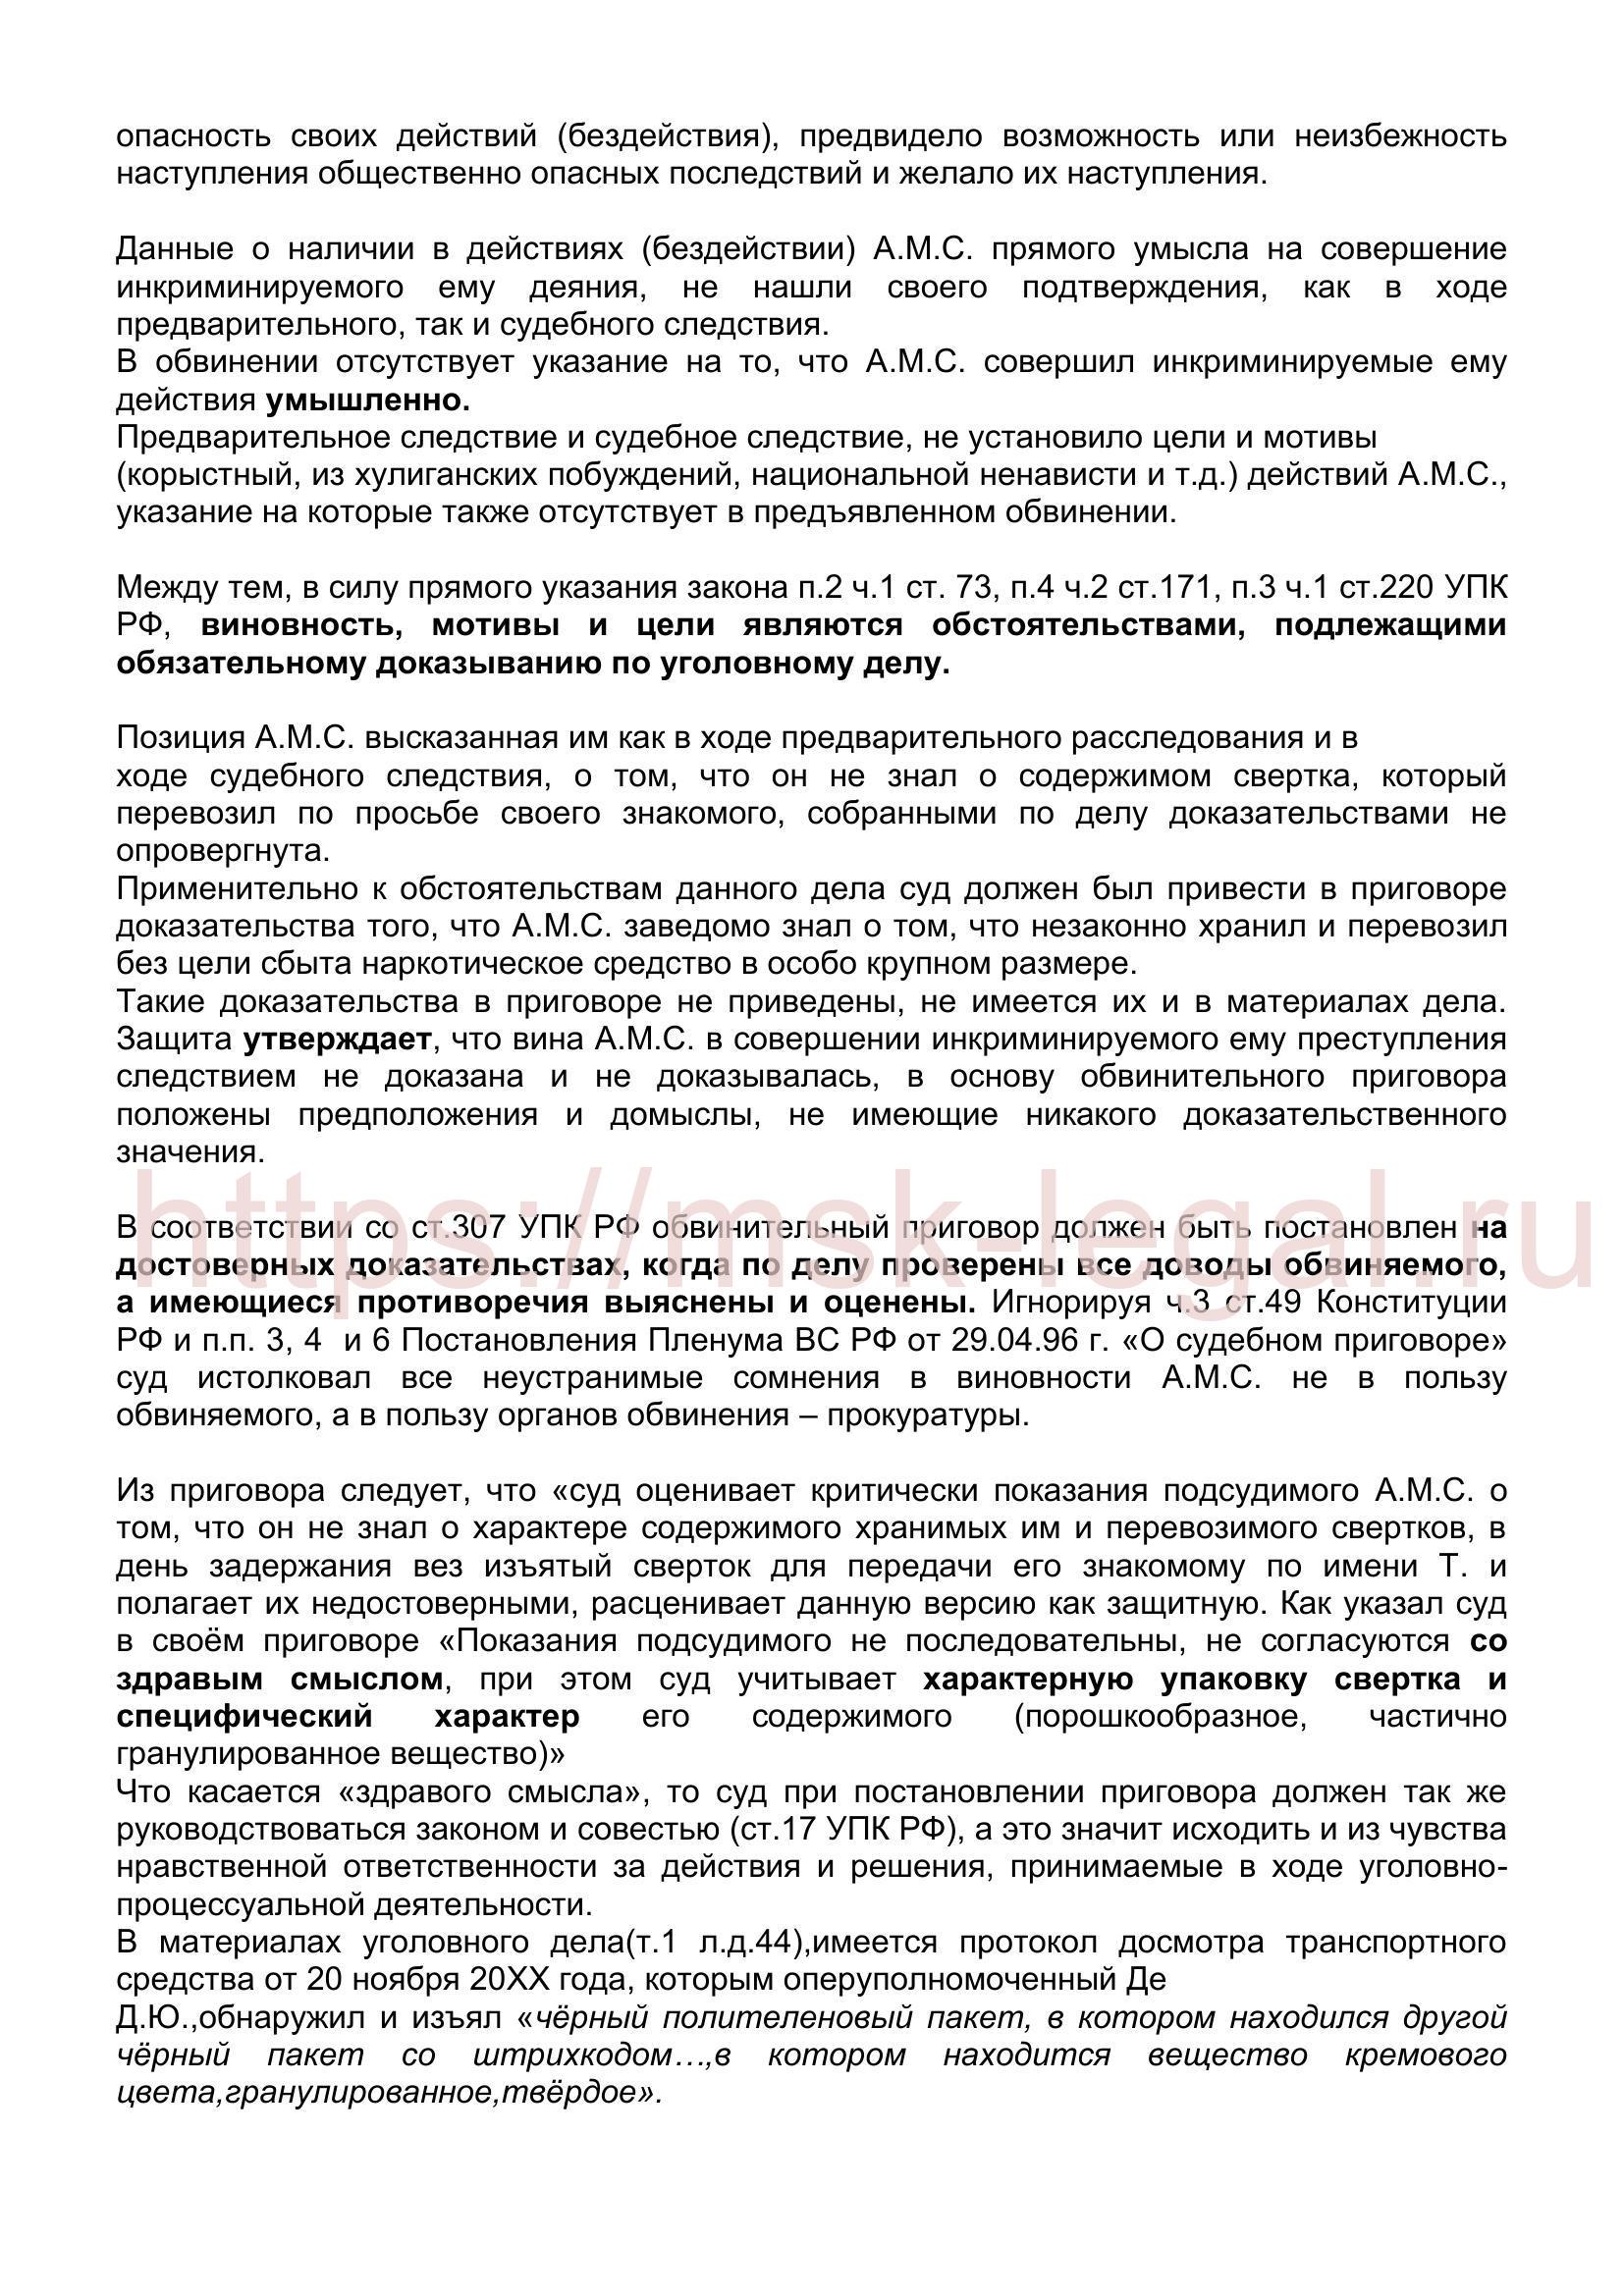 Кассационная жалоба на приговор по ст. 228 УК РФ